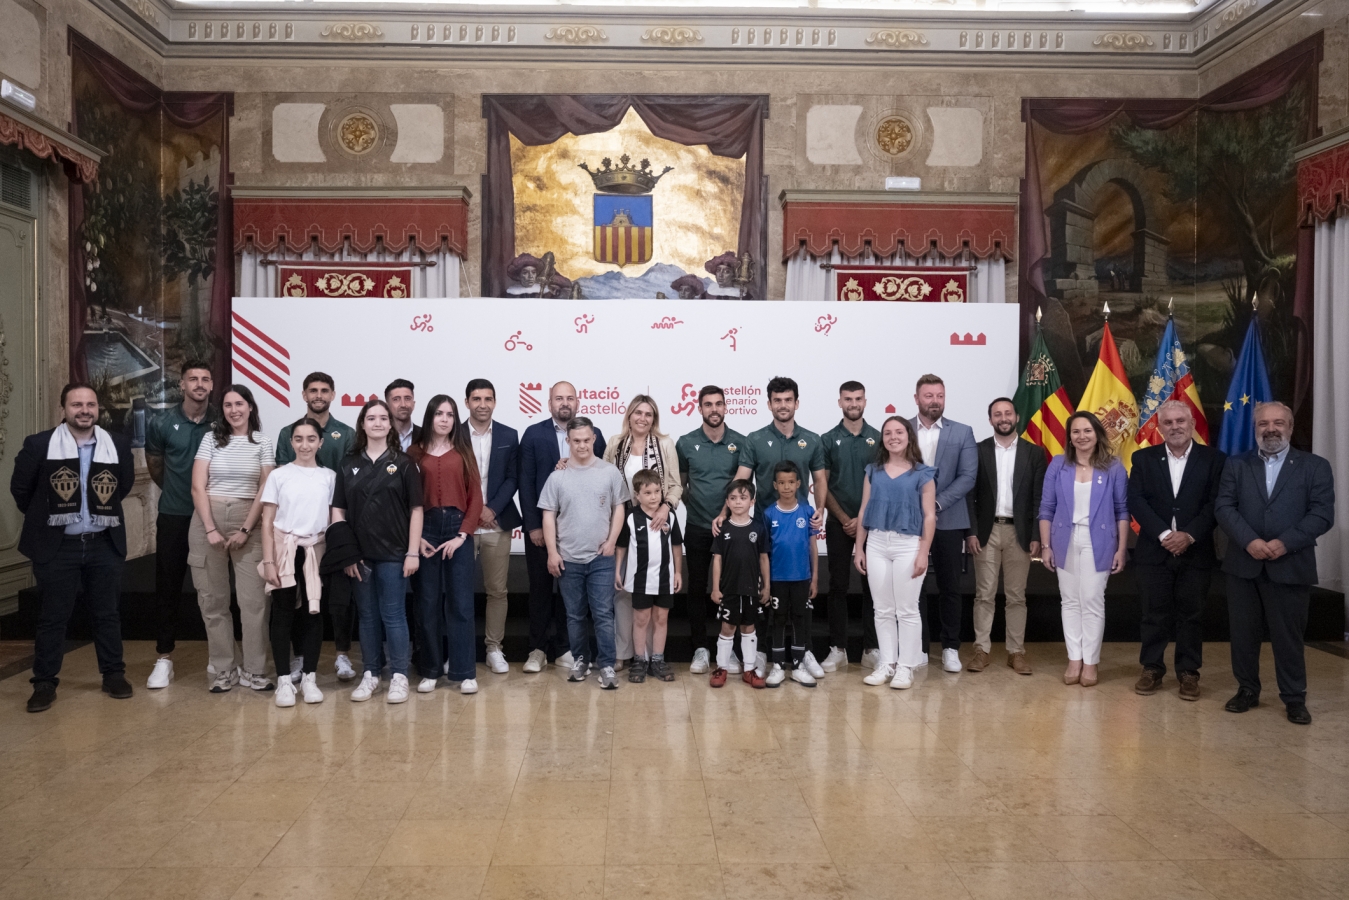 La Diputació rendix honors al CD Castellón